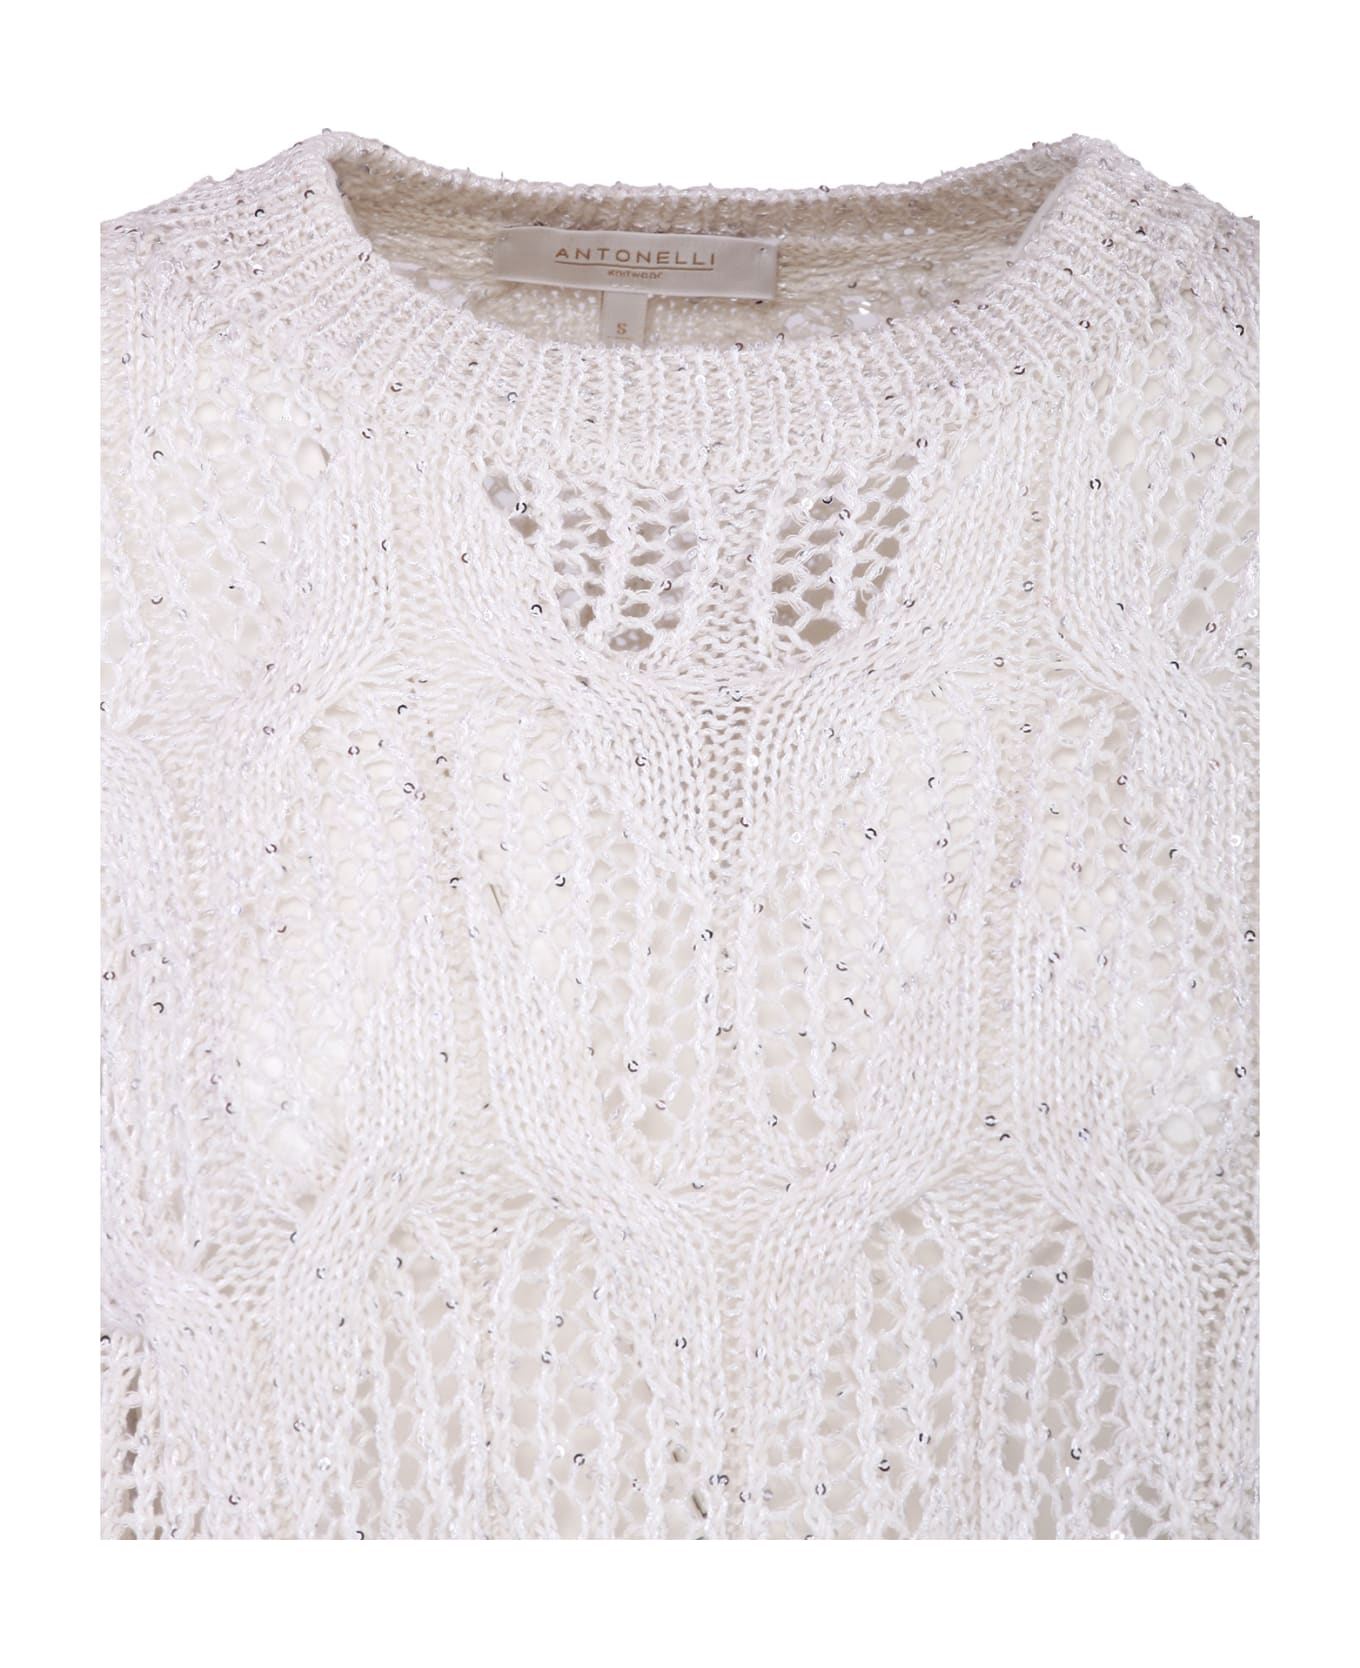 Antonelli Firenze Sweaters White - White